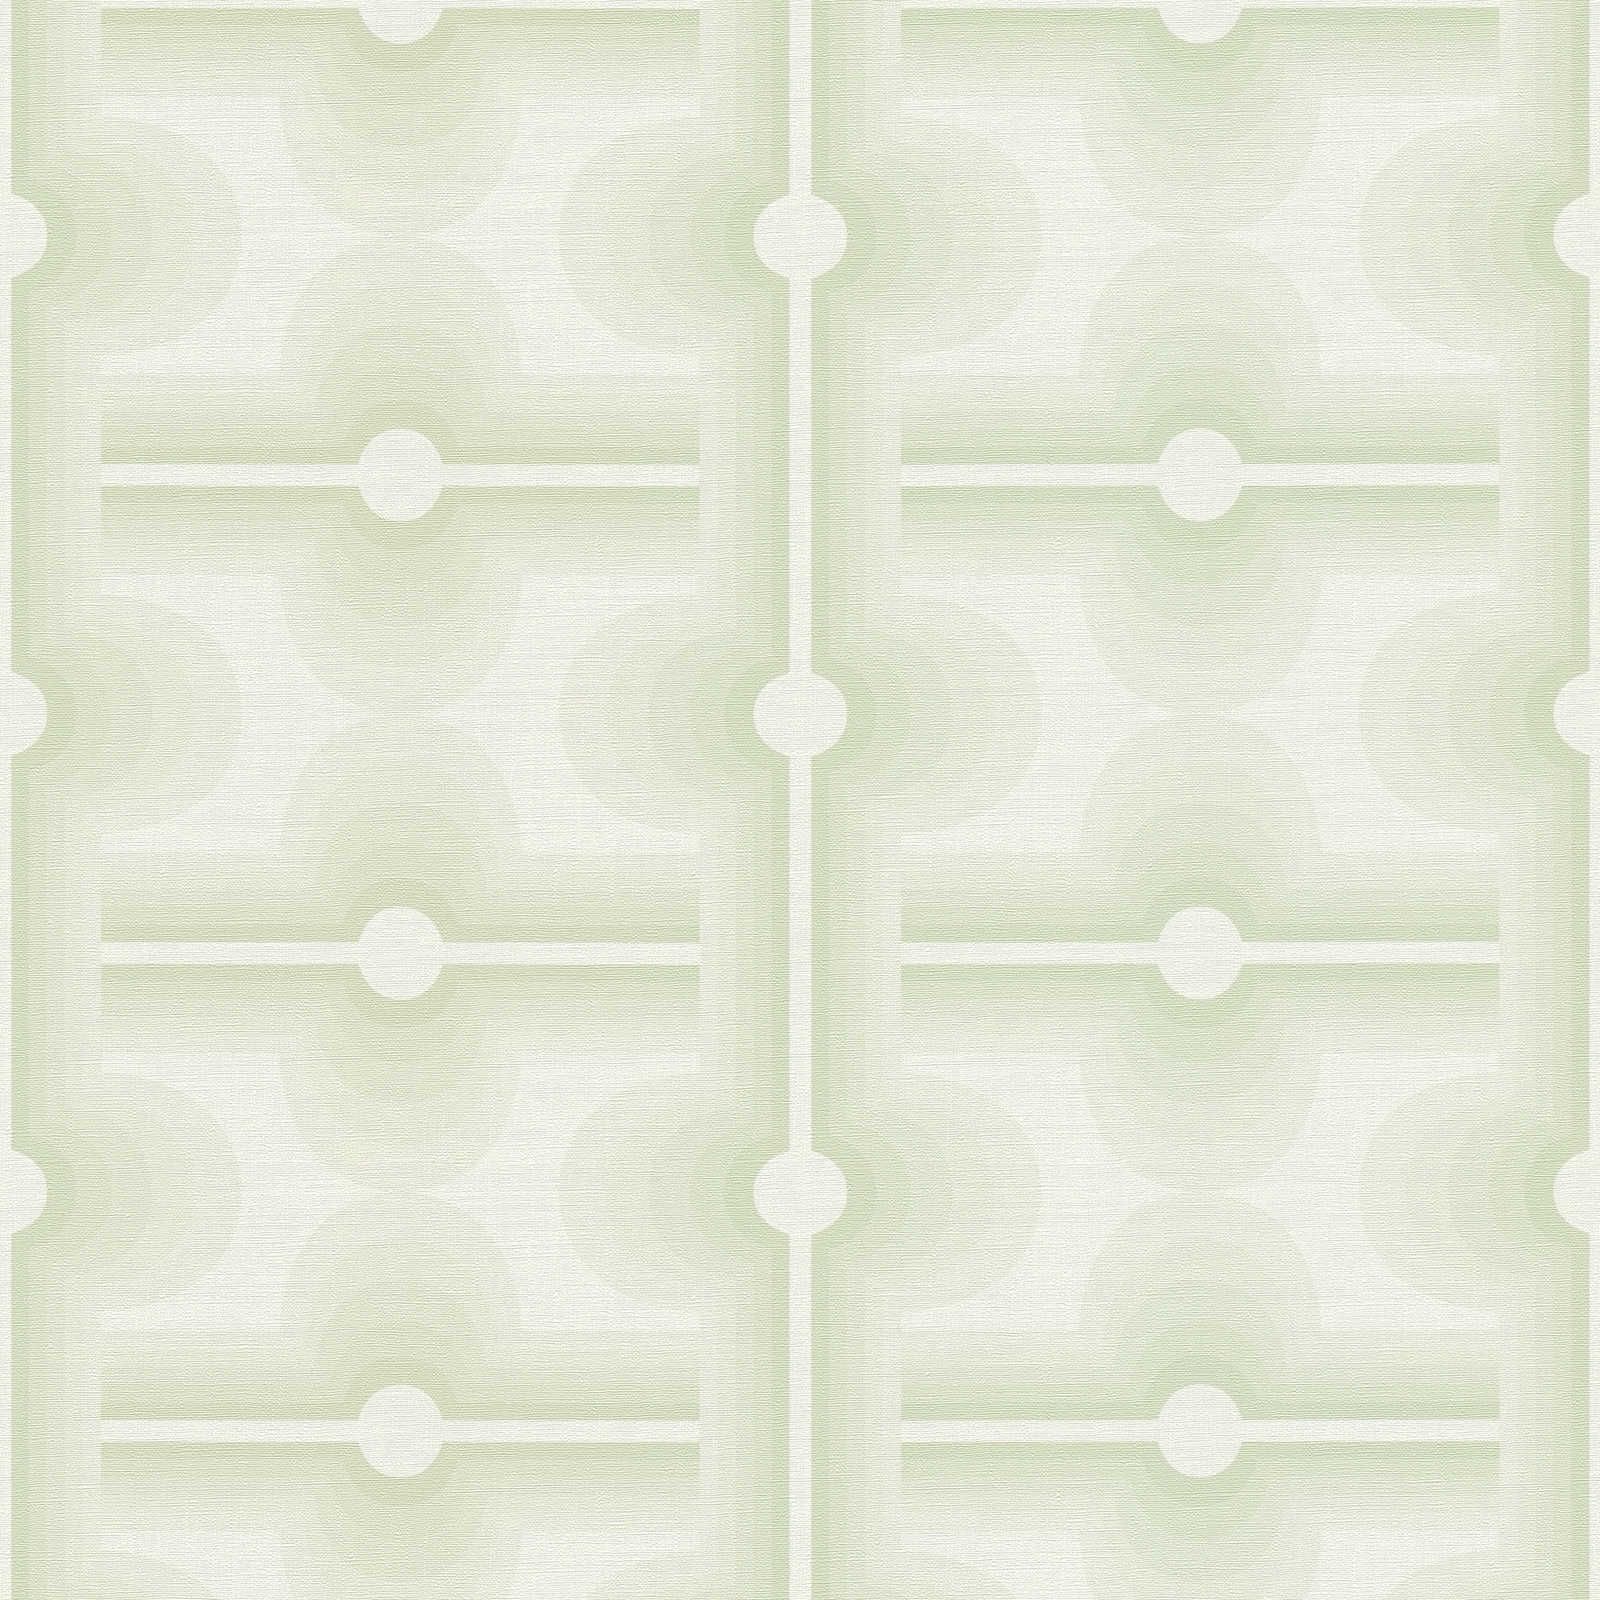 Retro pattern on non-woven wallpaper in a pale green - green, cream
